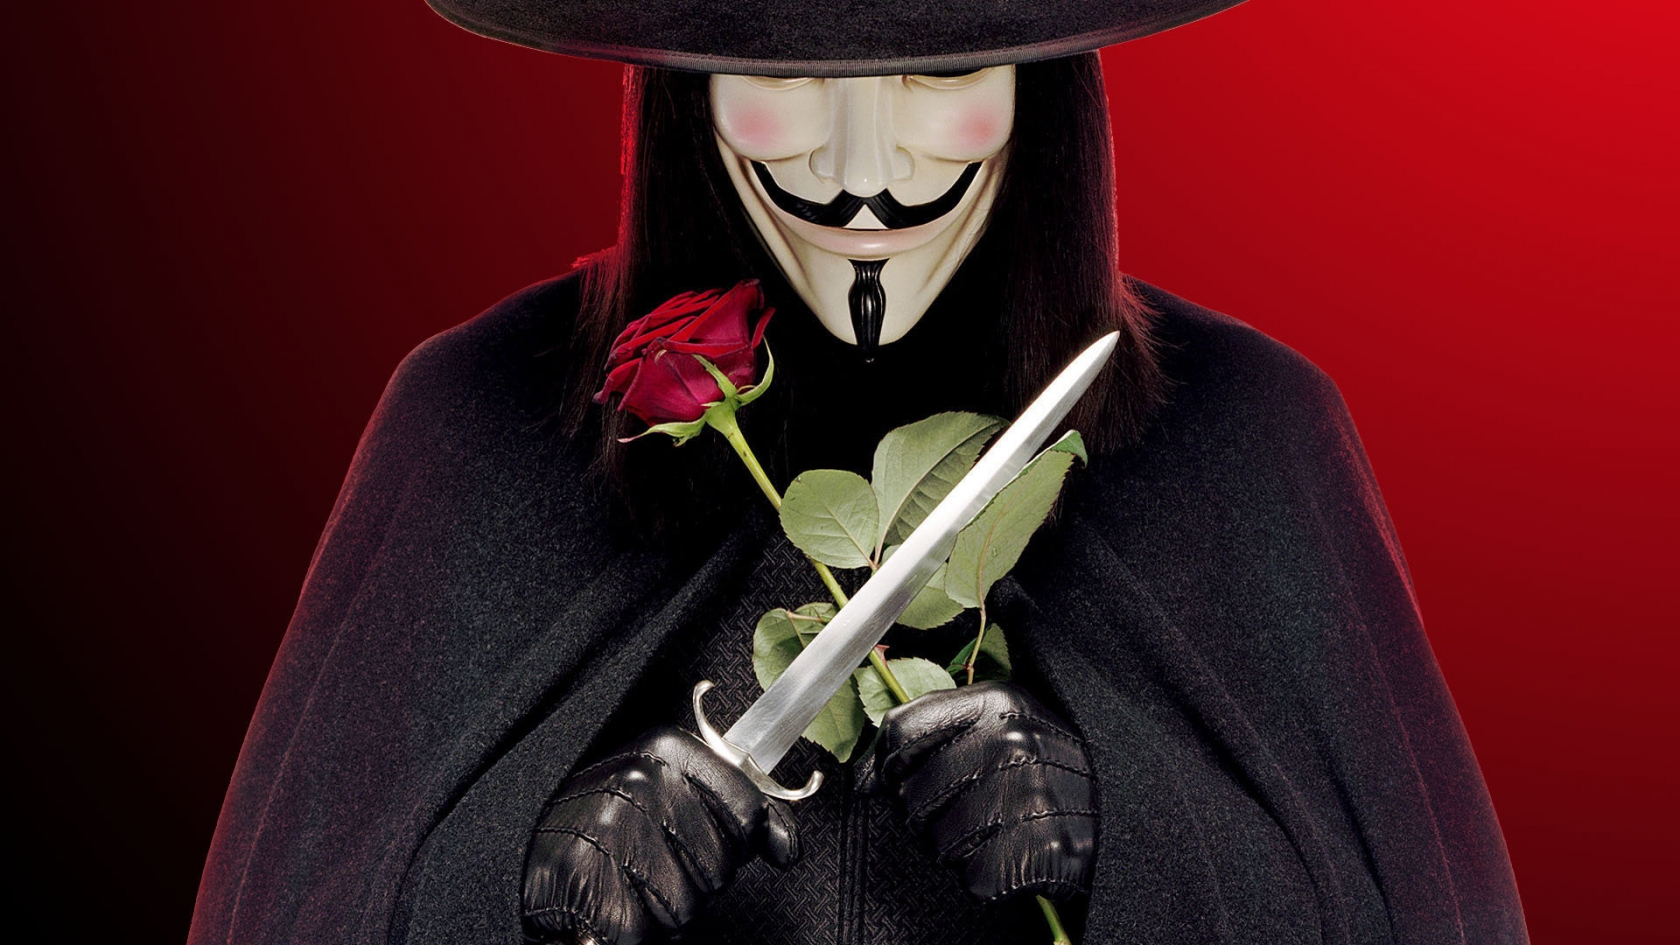 V for Vendetta Character for 1680 x 945 HDTV resolution